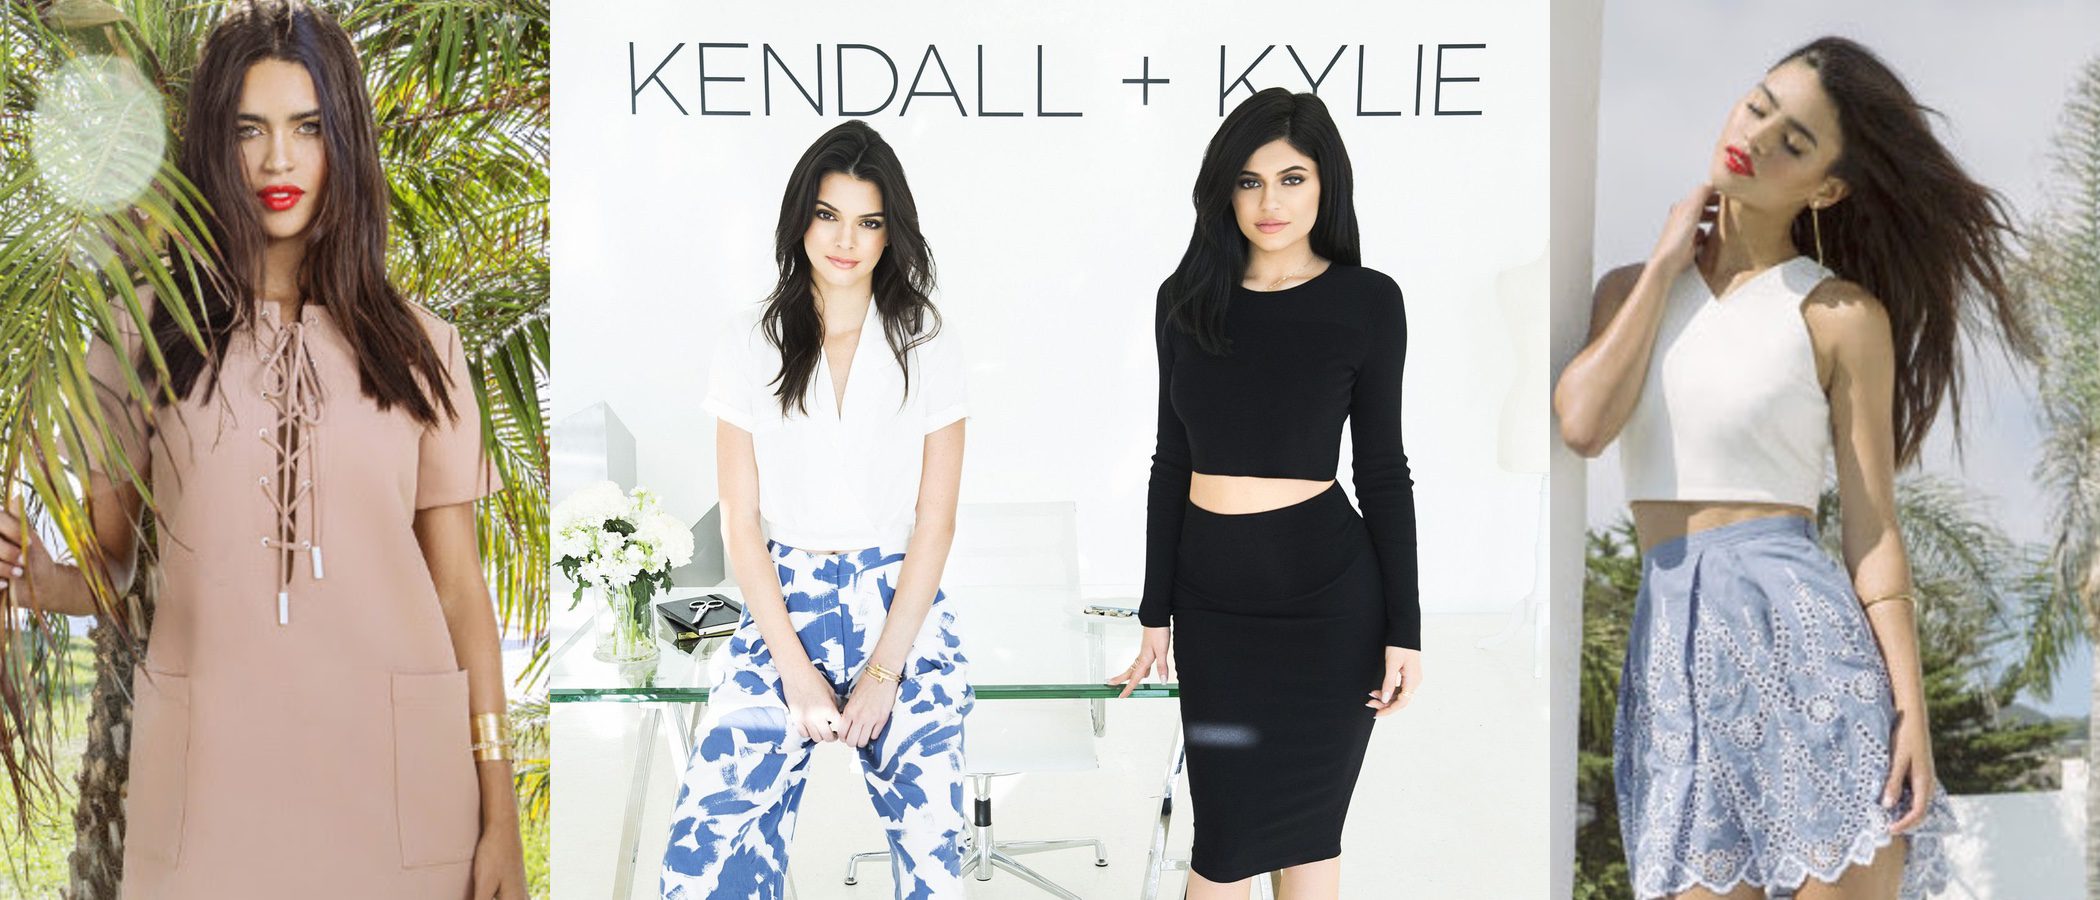 Kendall + Kylie aterriza en Europa para conquistar a las it girls con su nueva colección